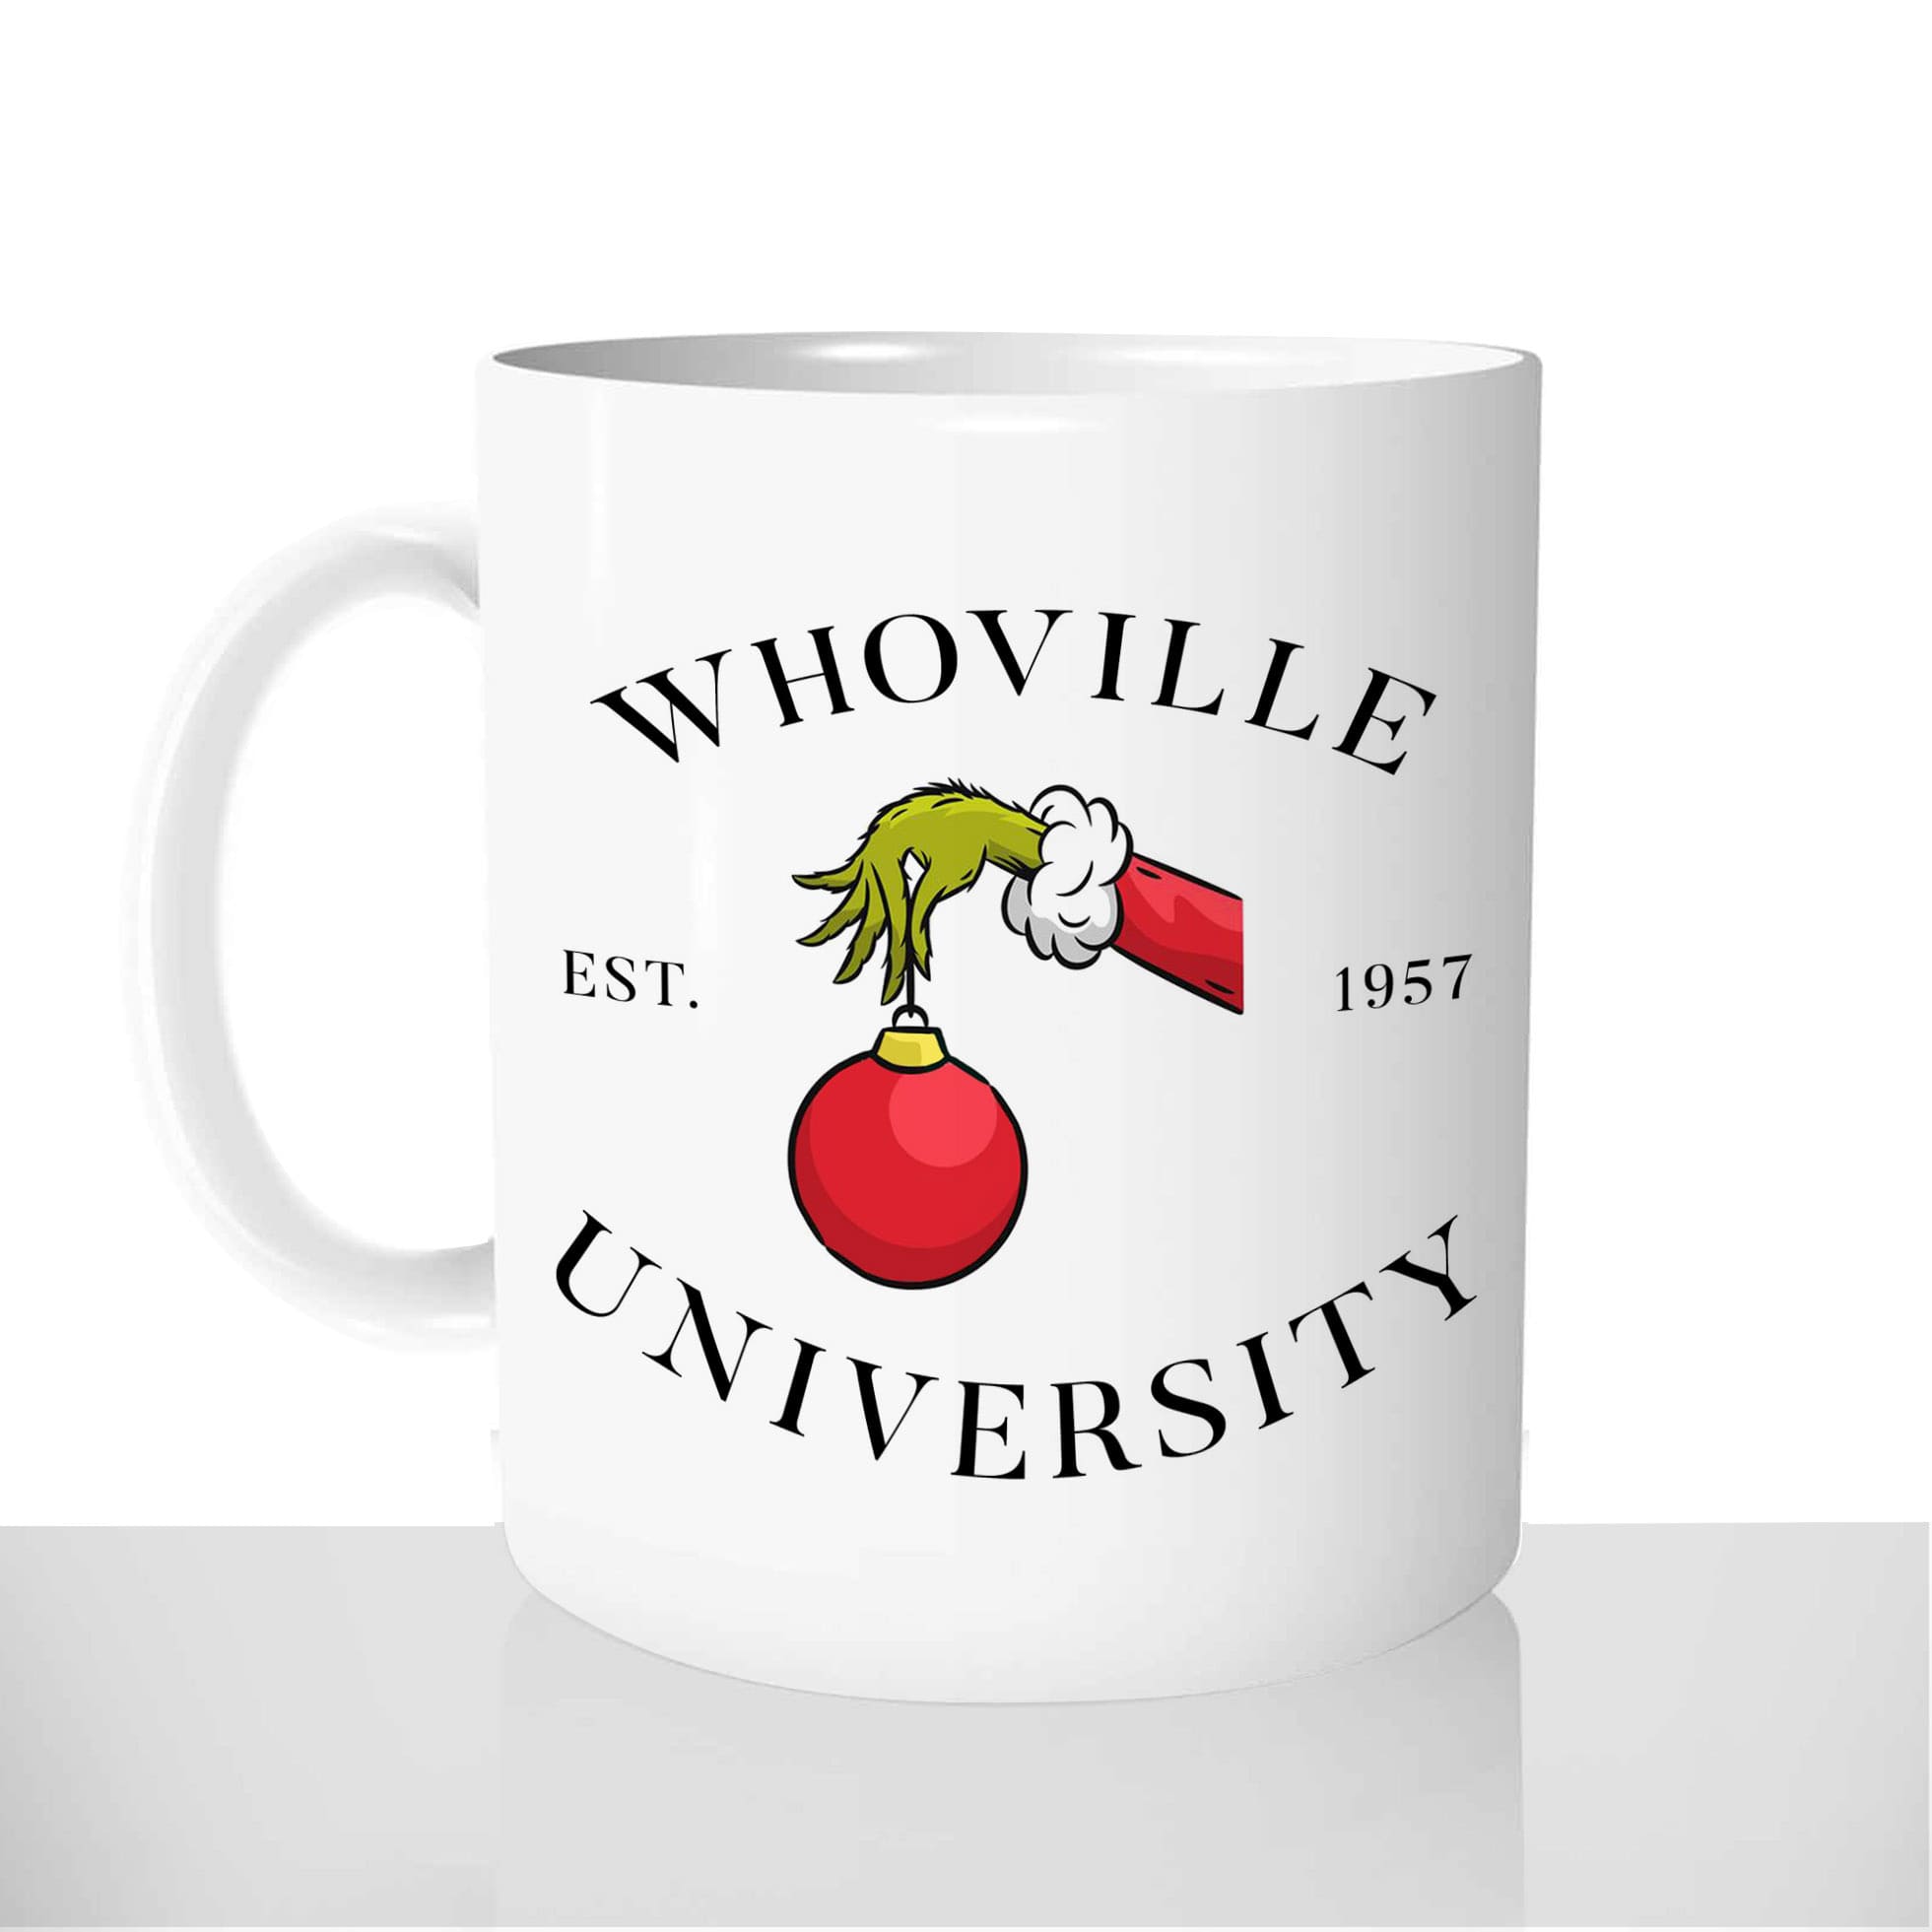 mug-blanc-céramique-11oz-france-mugs-surprise-pas-cher-grinch-whoville-university-noel-humour